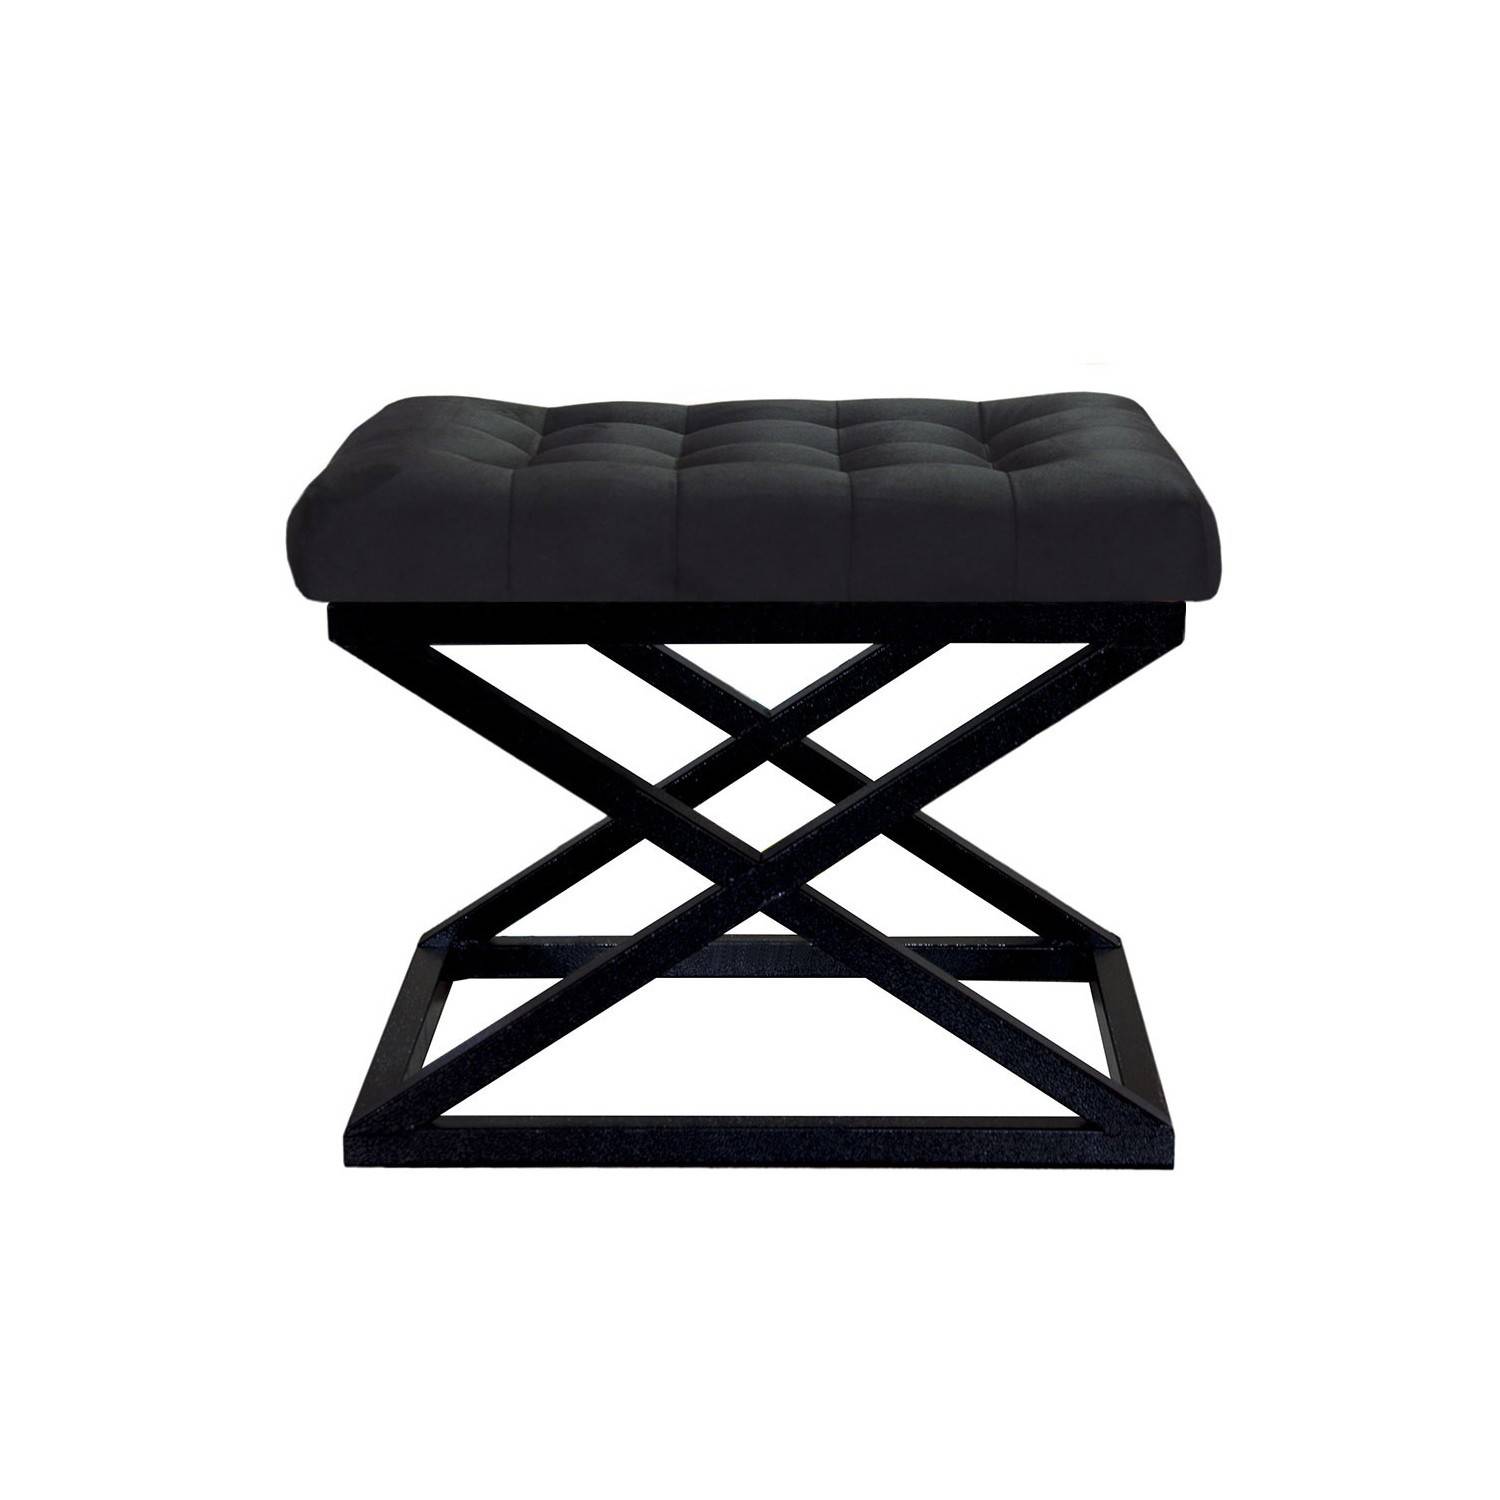 Taburete Ulad de metal y terciopelo negro, asiento tapizado